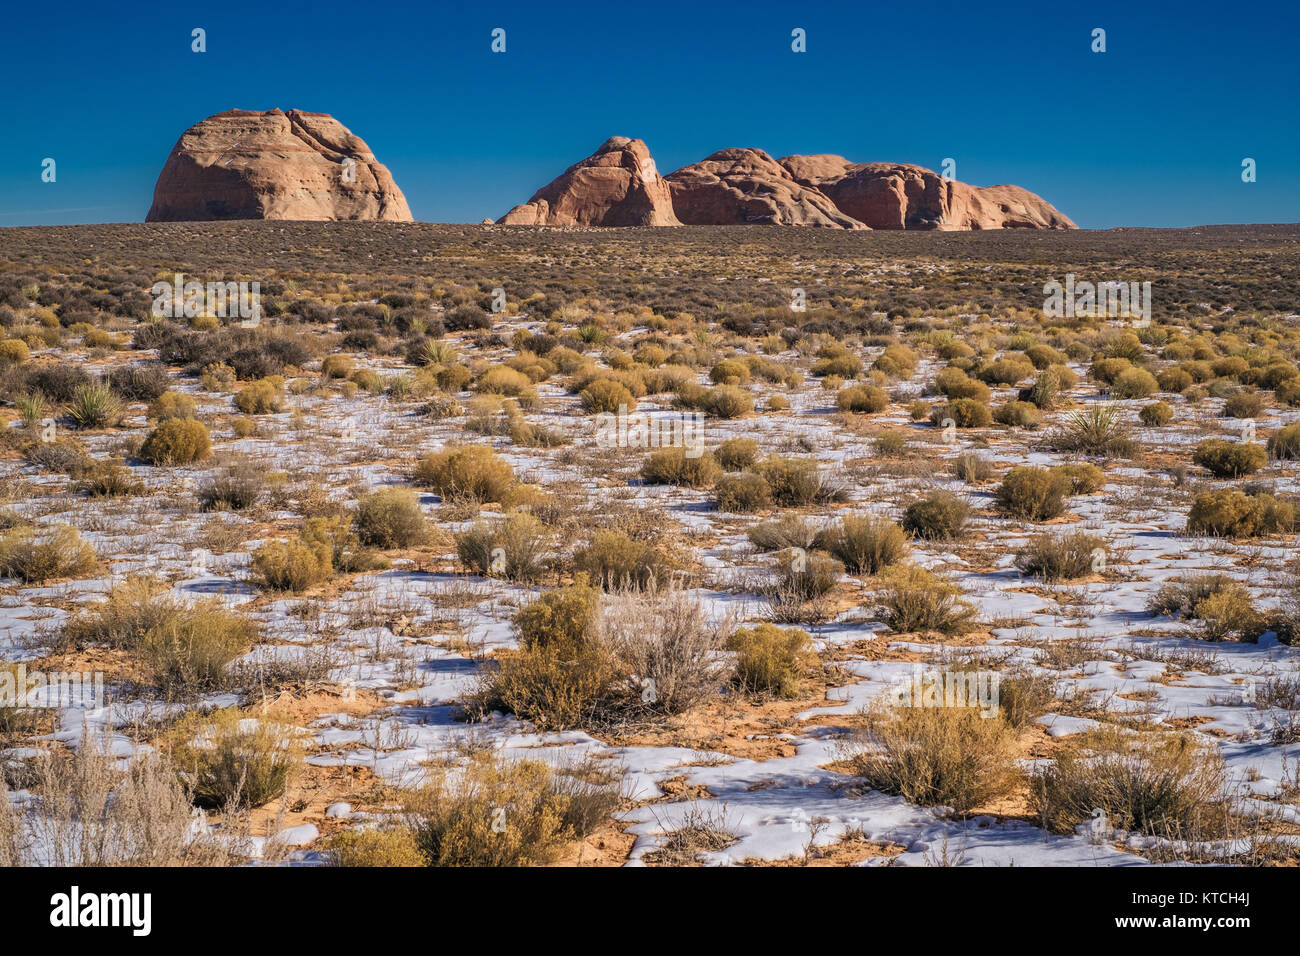 Felsformation im Wüstenklima Land in der Nähe von Page. Arizona USA. Stockfoto